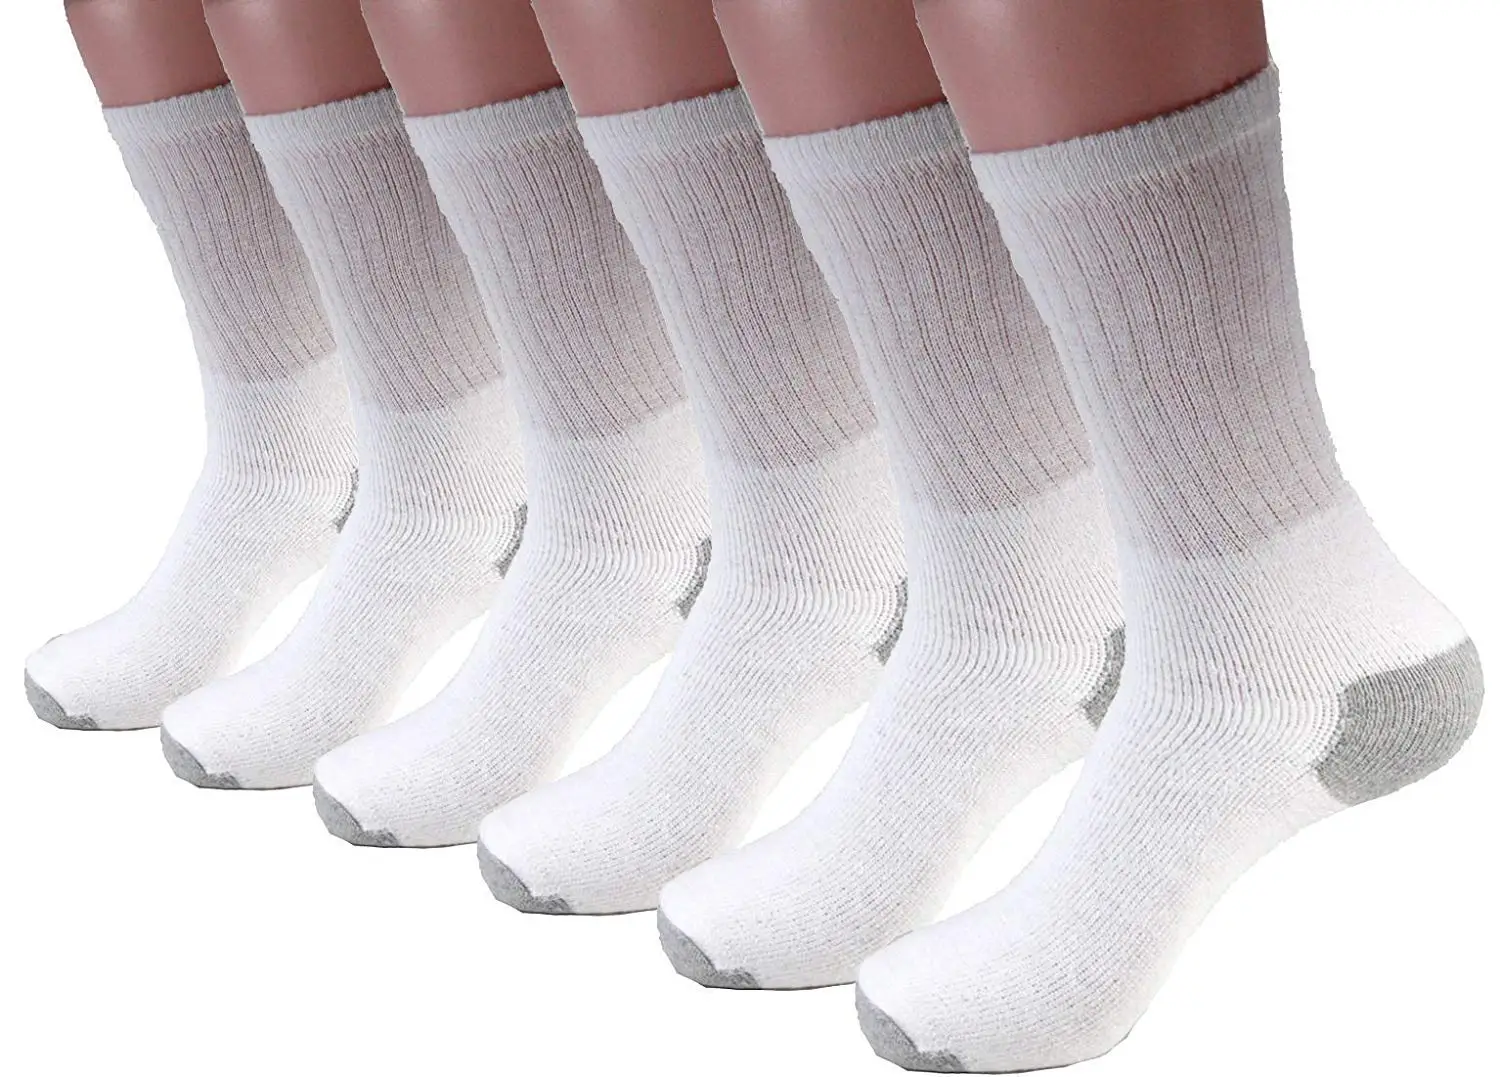 White long socks